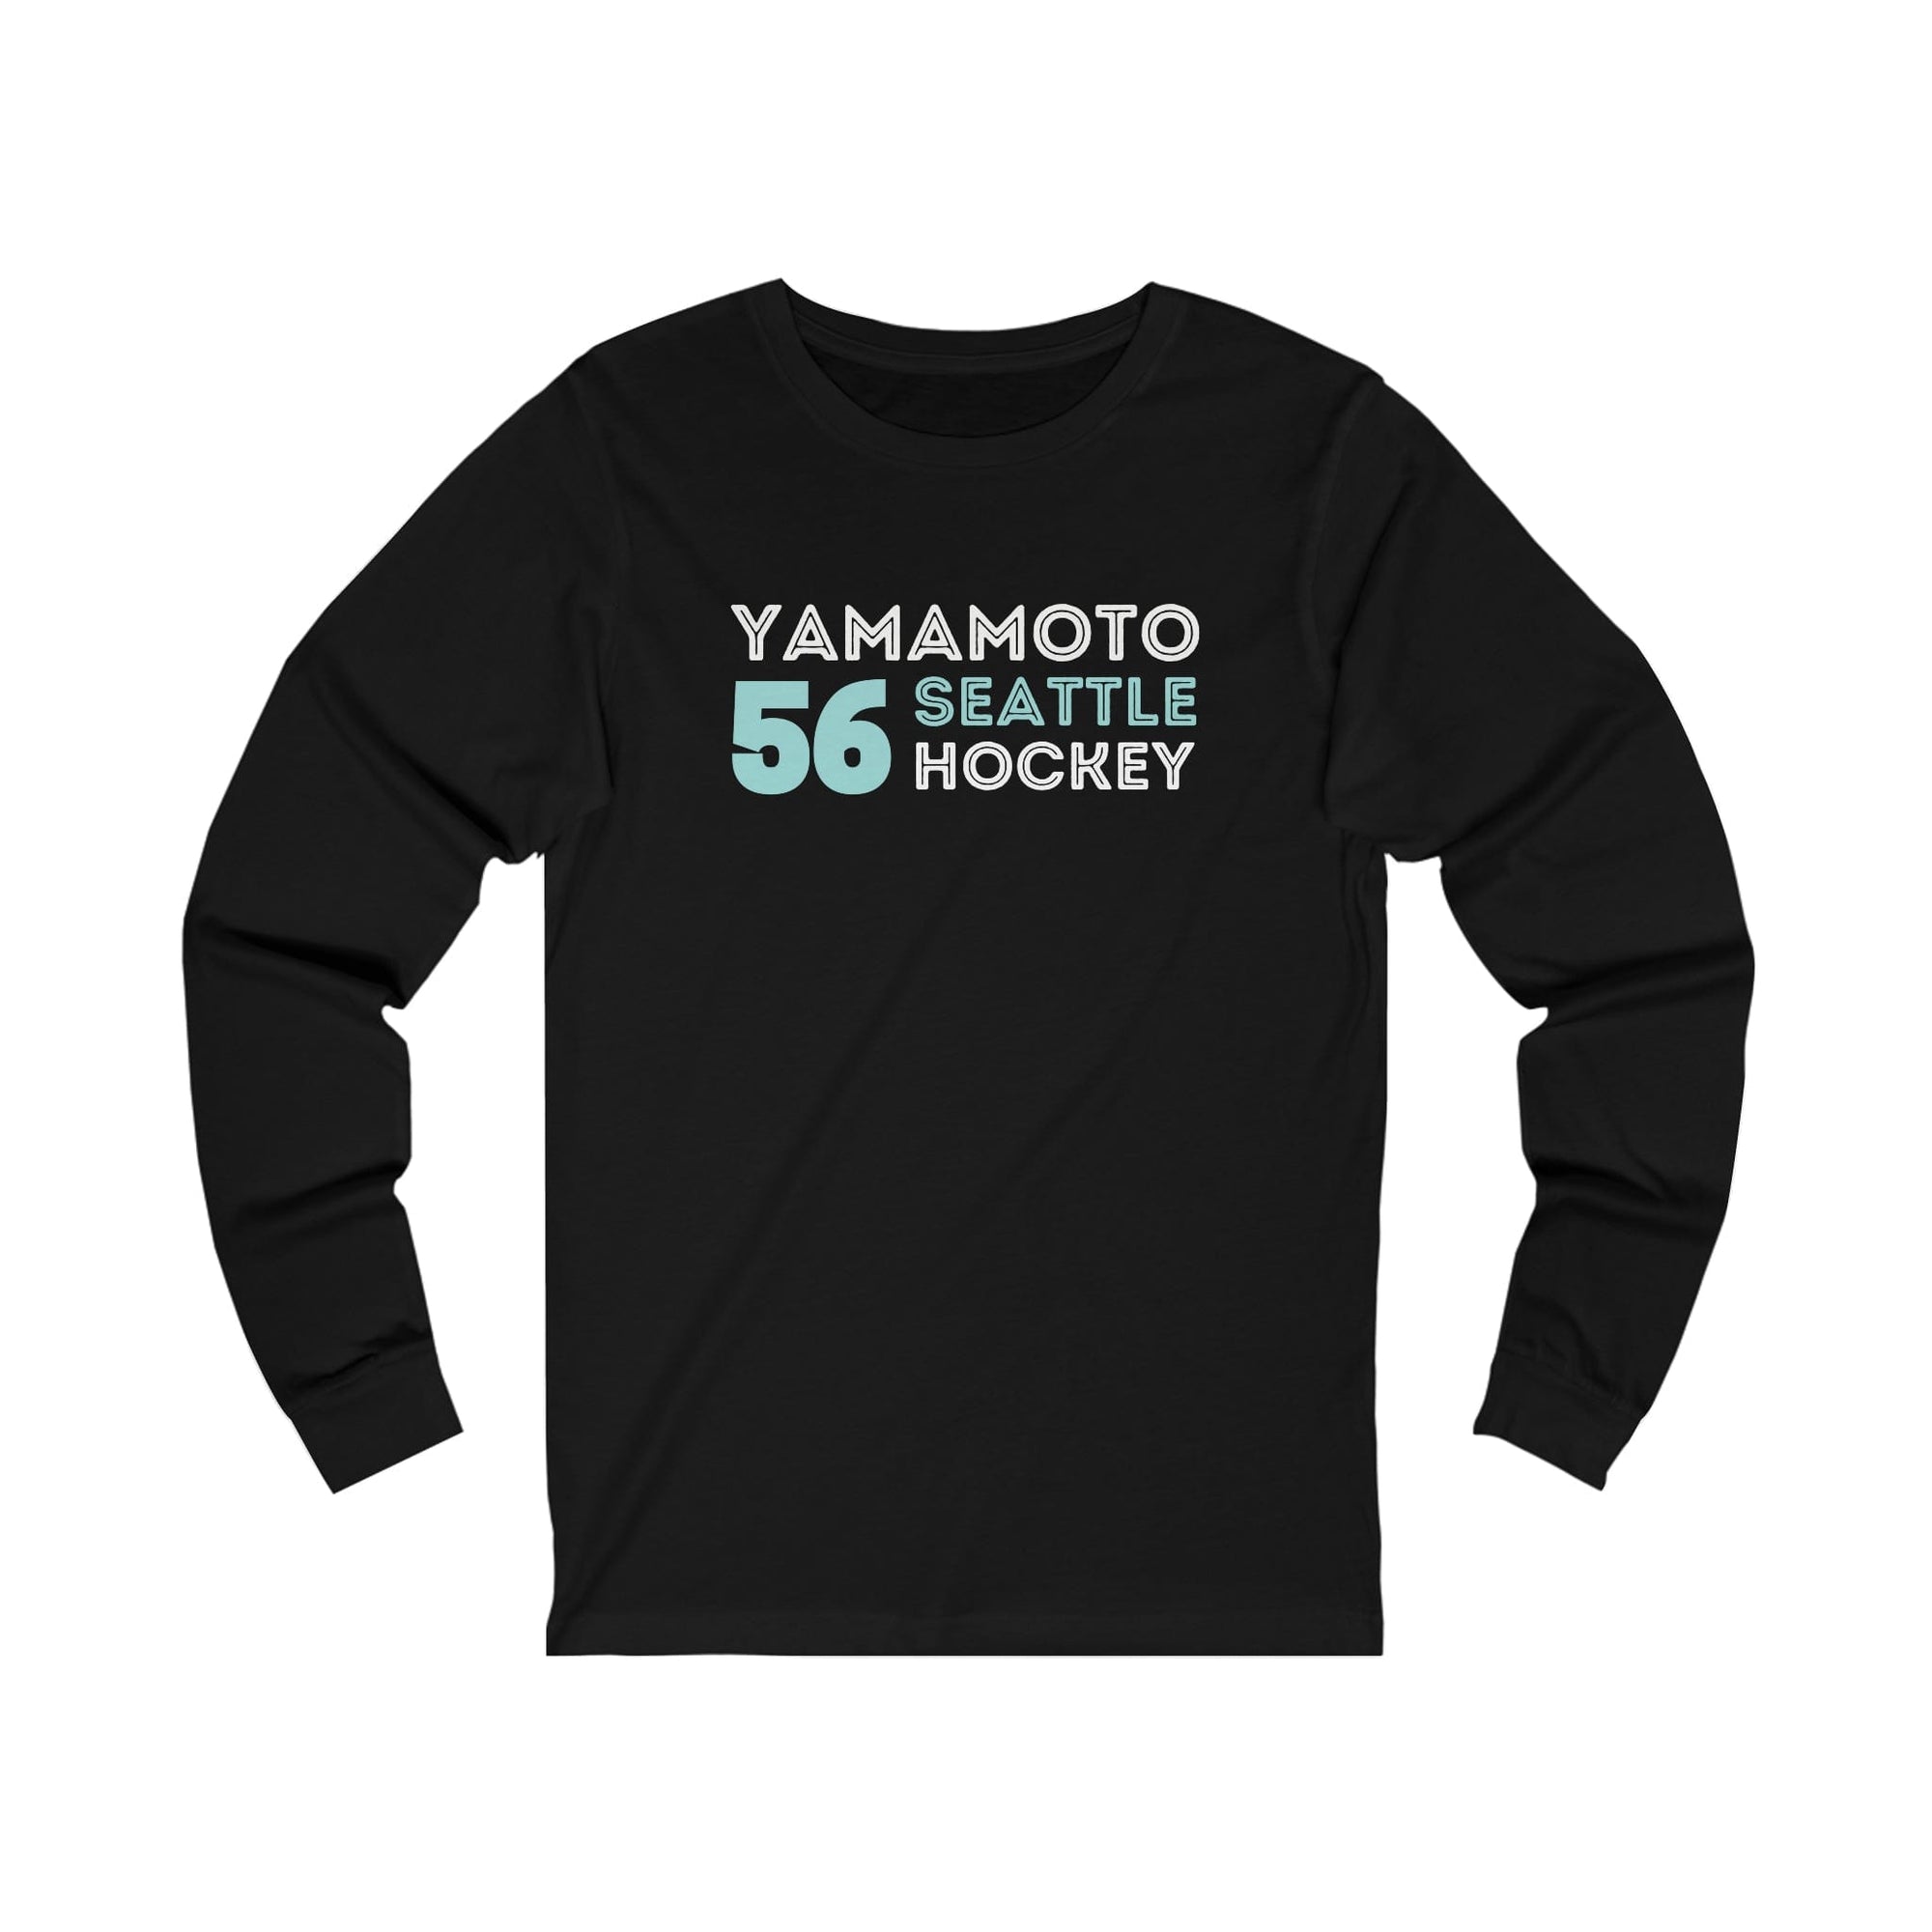 Long-sleeve Yamamoto 56 Seattle Hockey Grafitti Wall Design Unisex Jersey Long Sleeve Shirt